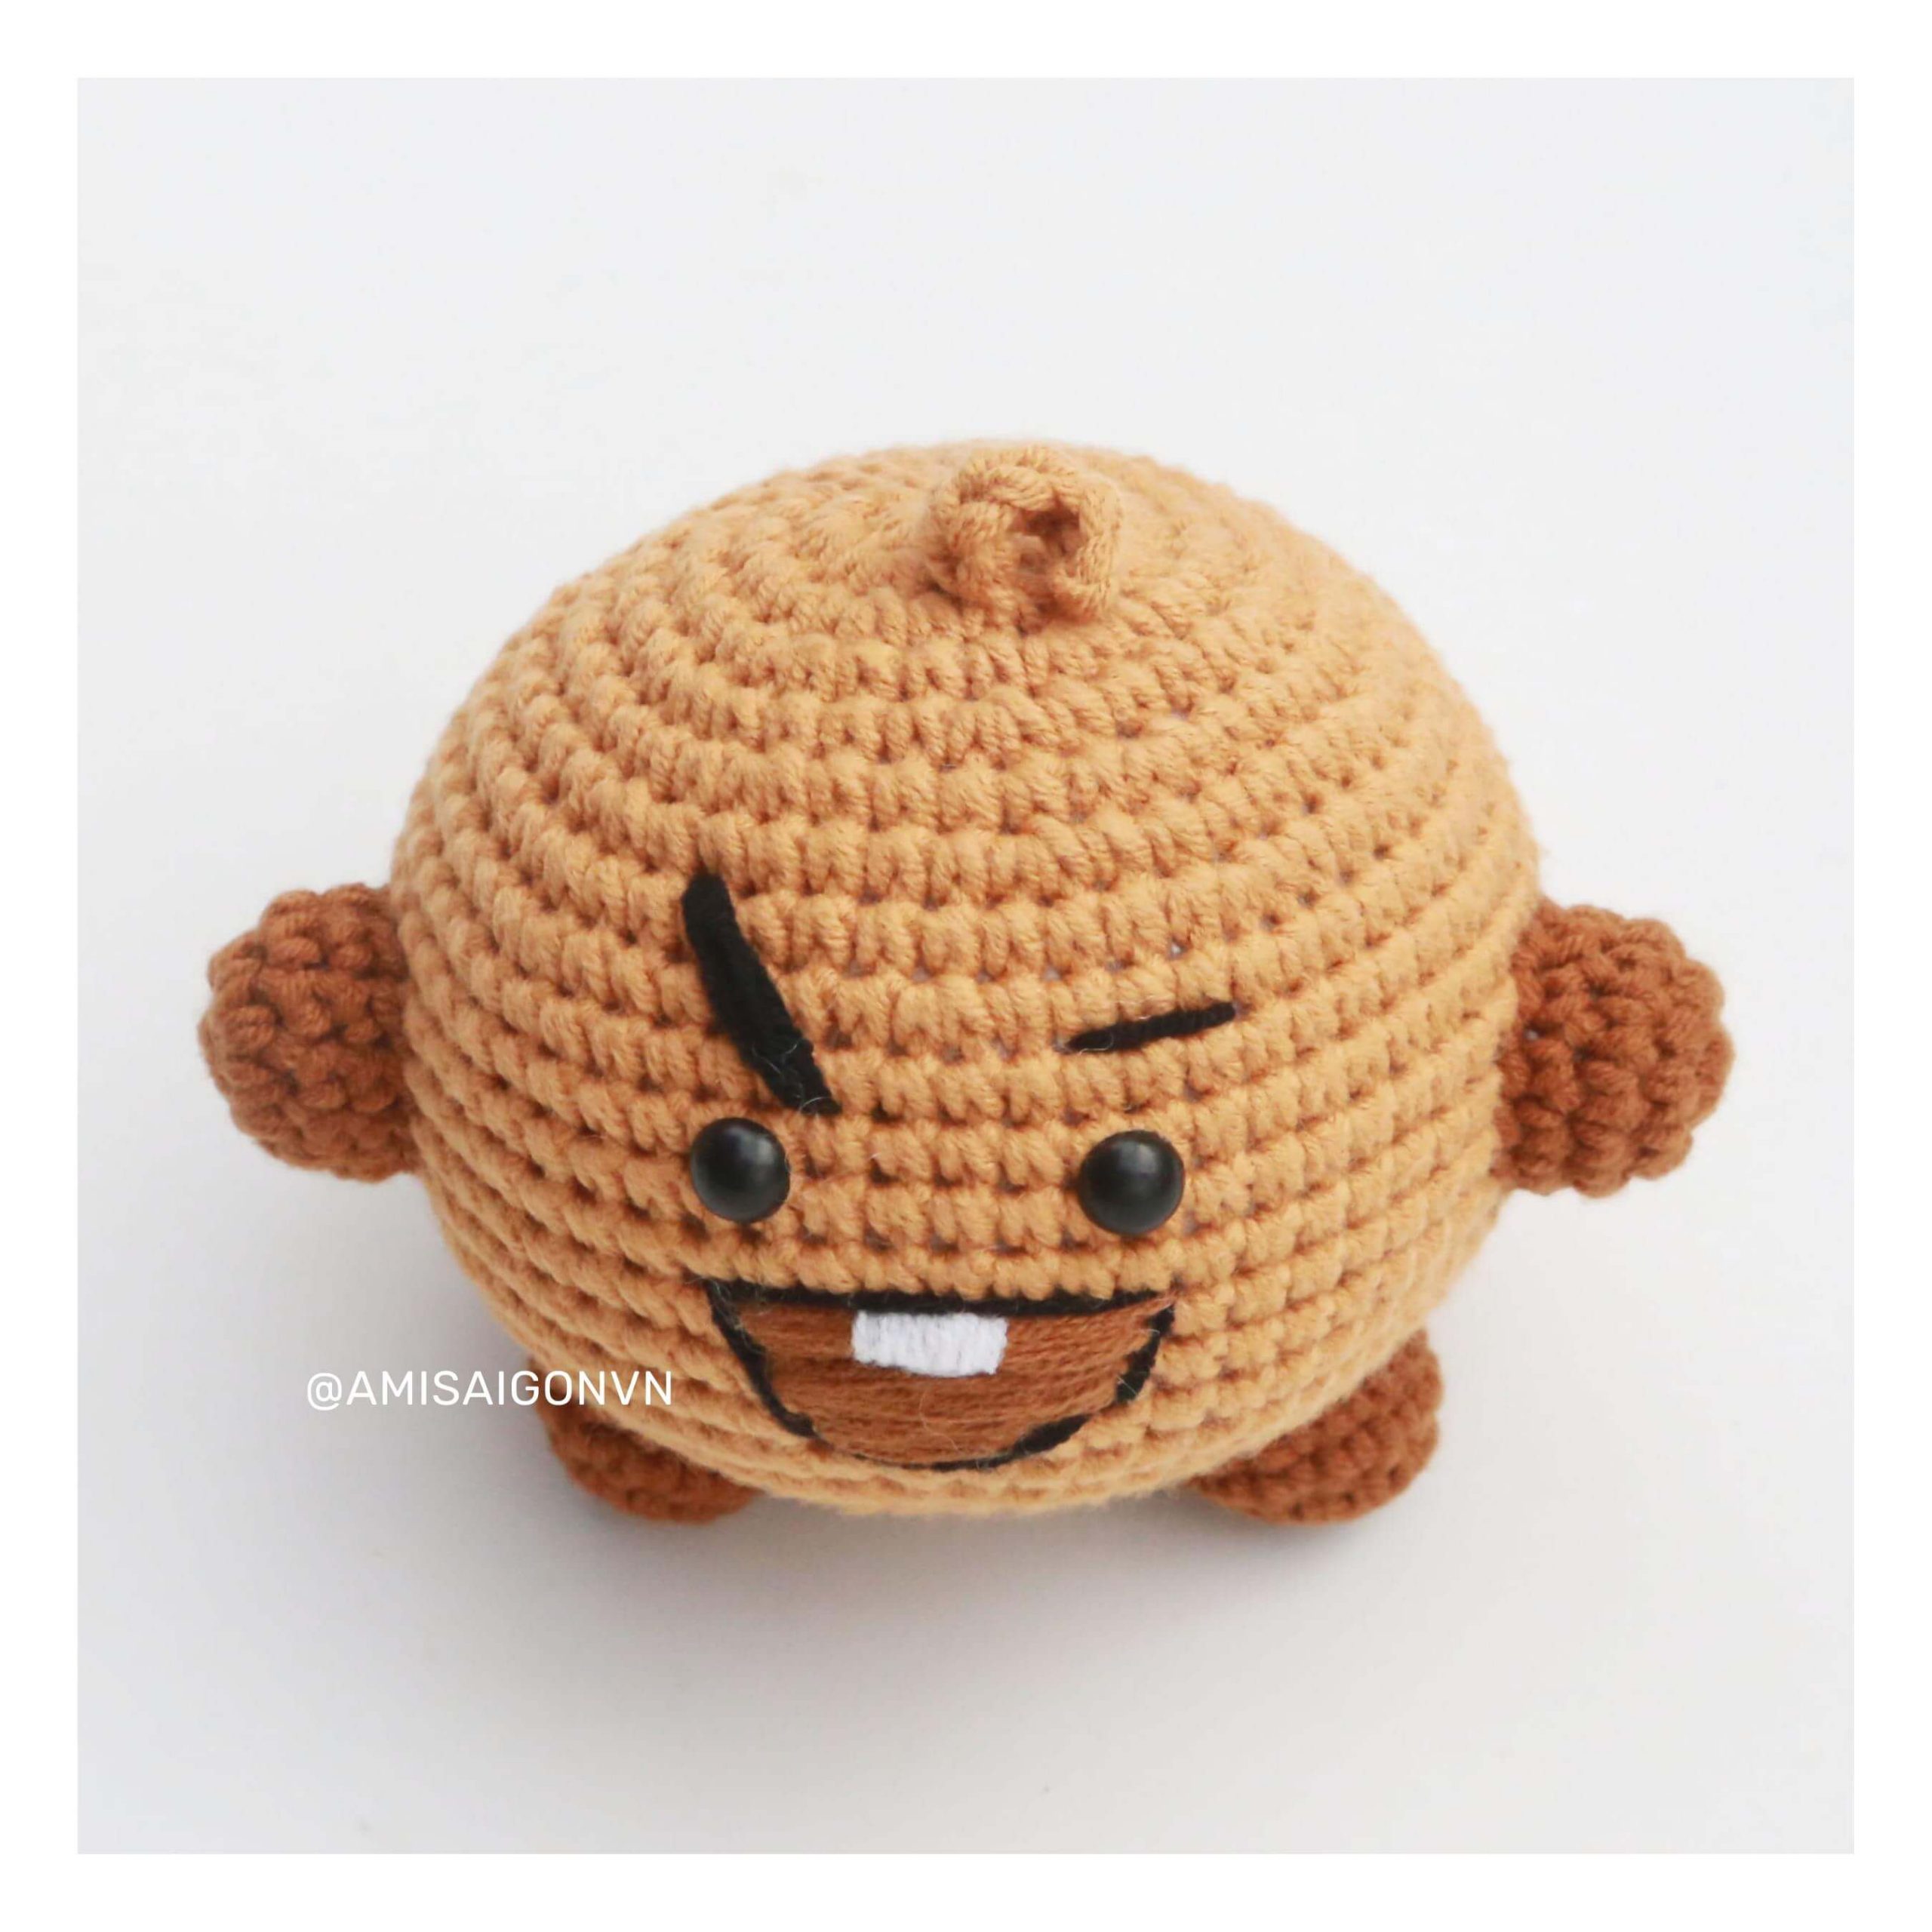 shooky-amigurumi-crochet-pattern-amisaigon-bt21-bts (5)